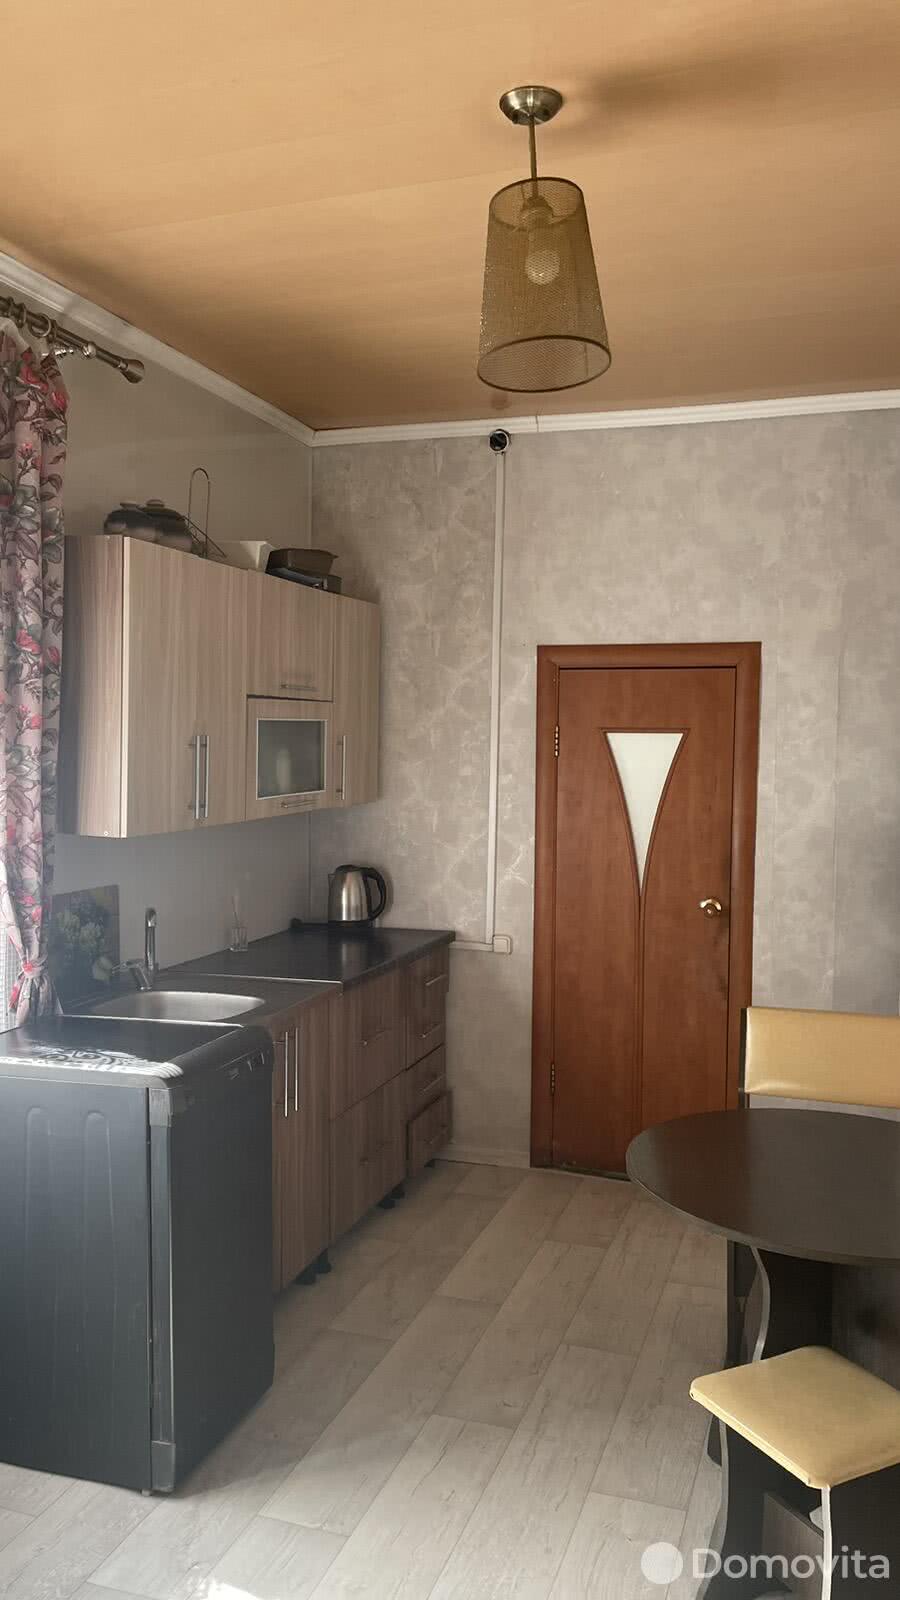 Продать 1-этажный дом в Минске, Минская область ул. Серебрянская, д. 6, 84000USD, код 637118 - фото 3